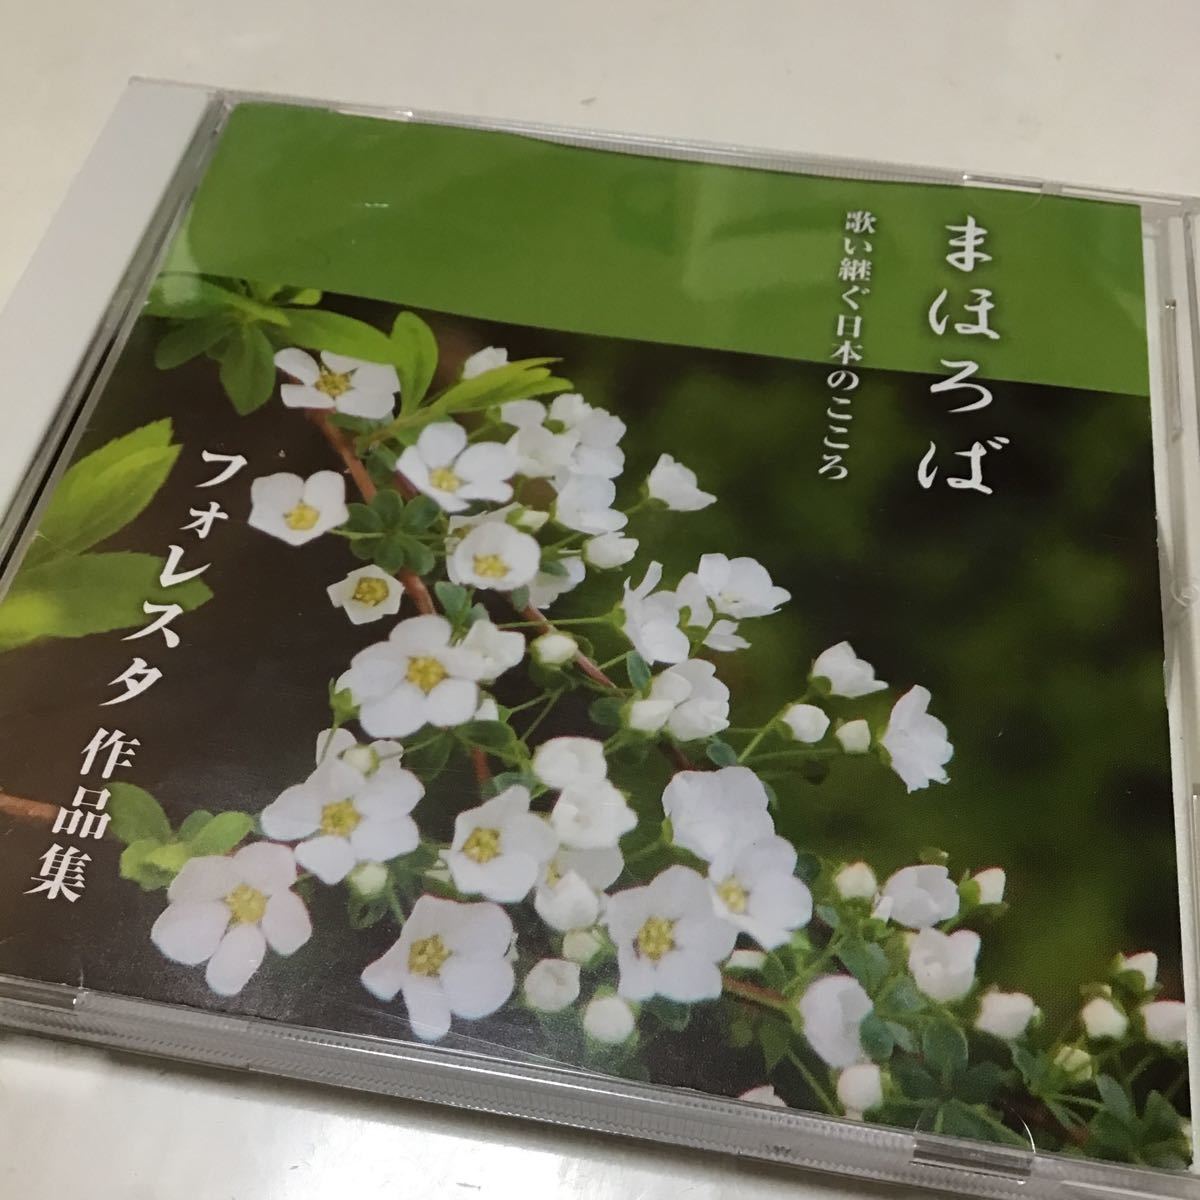 【合わせ買い不可】 まほろば 歌い継ぐ日本のこころ フォレスタ作品集 CD FORESTA_画像1